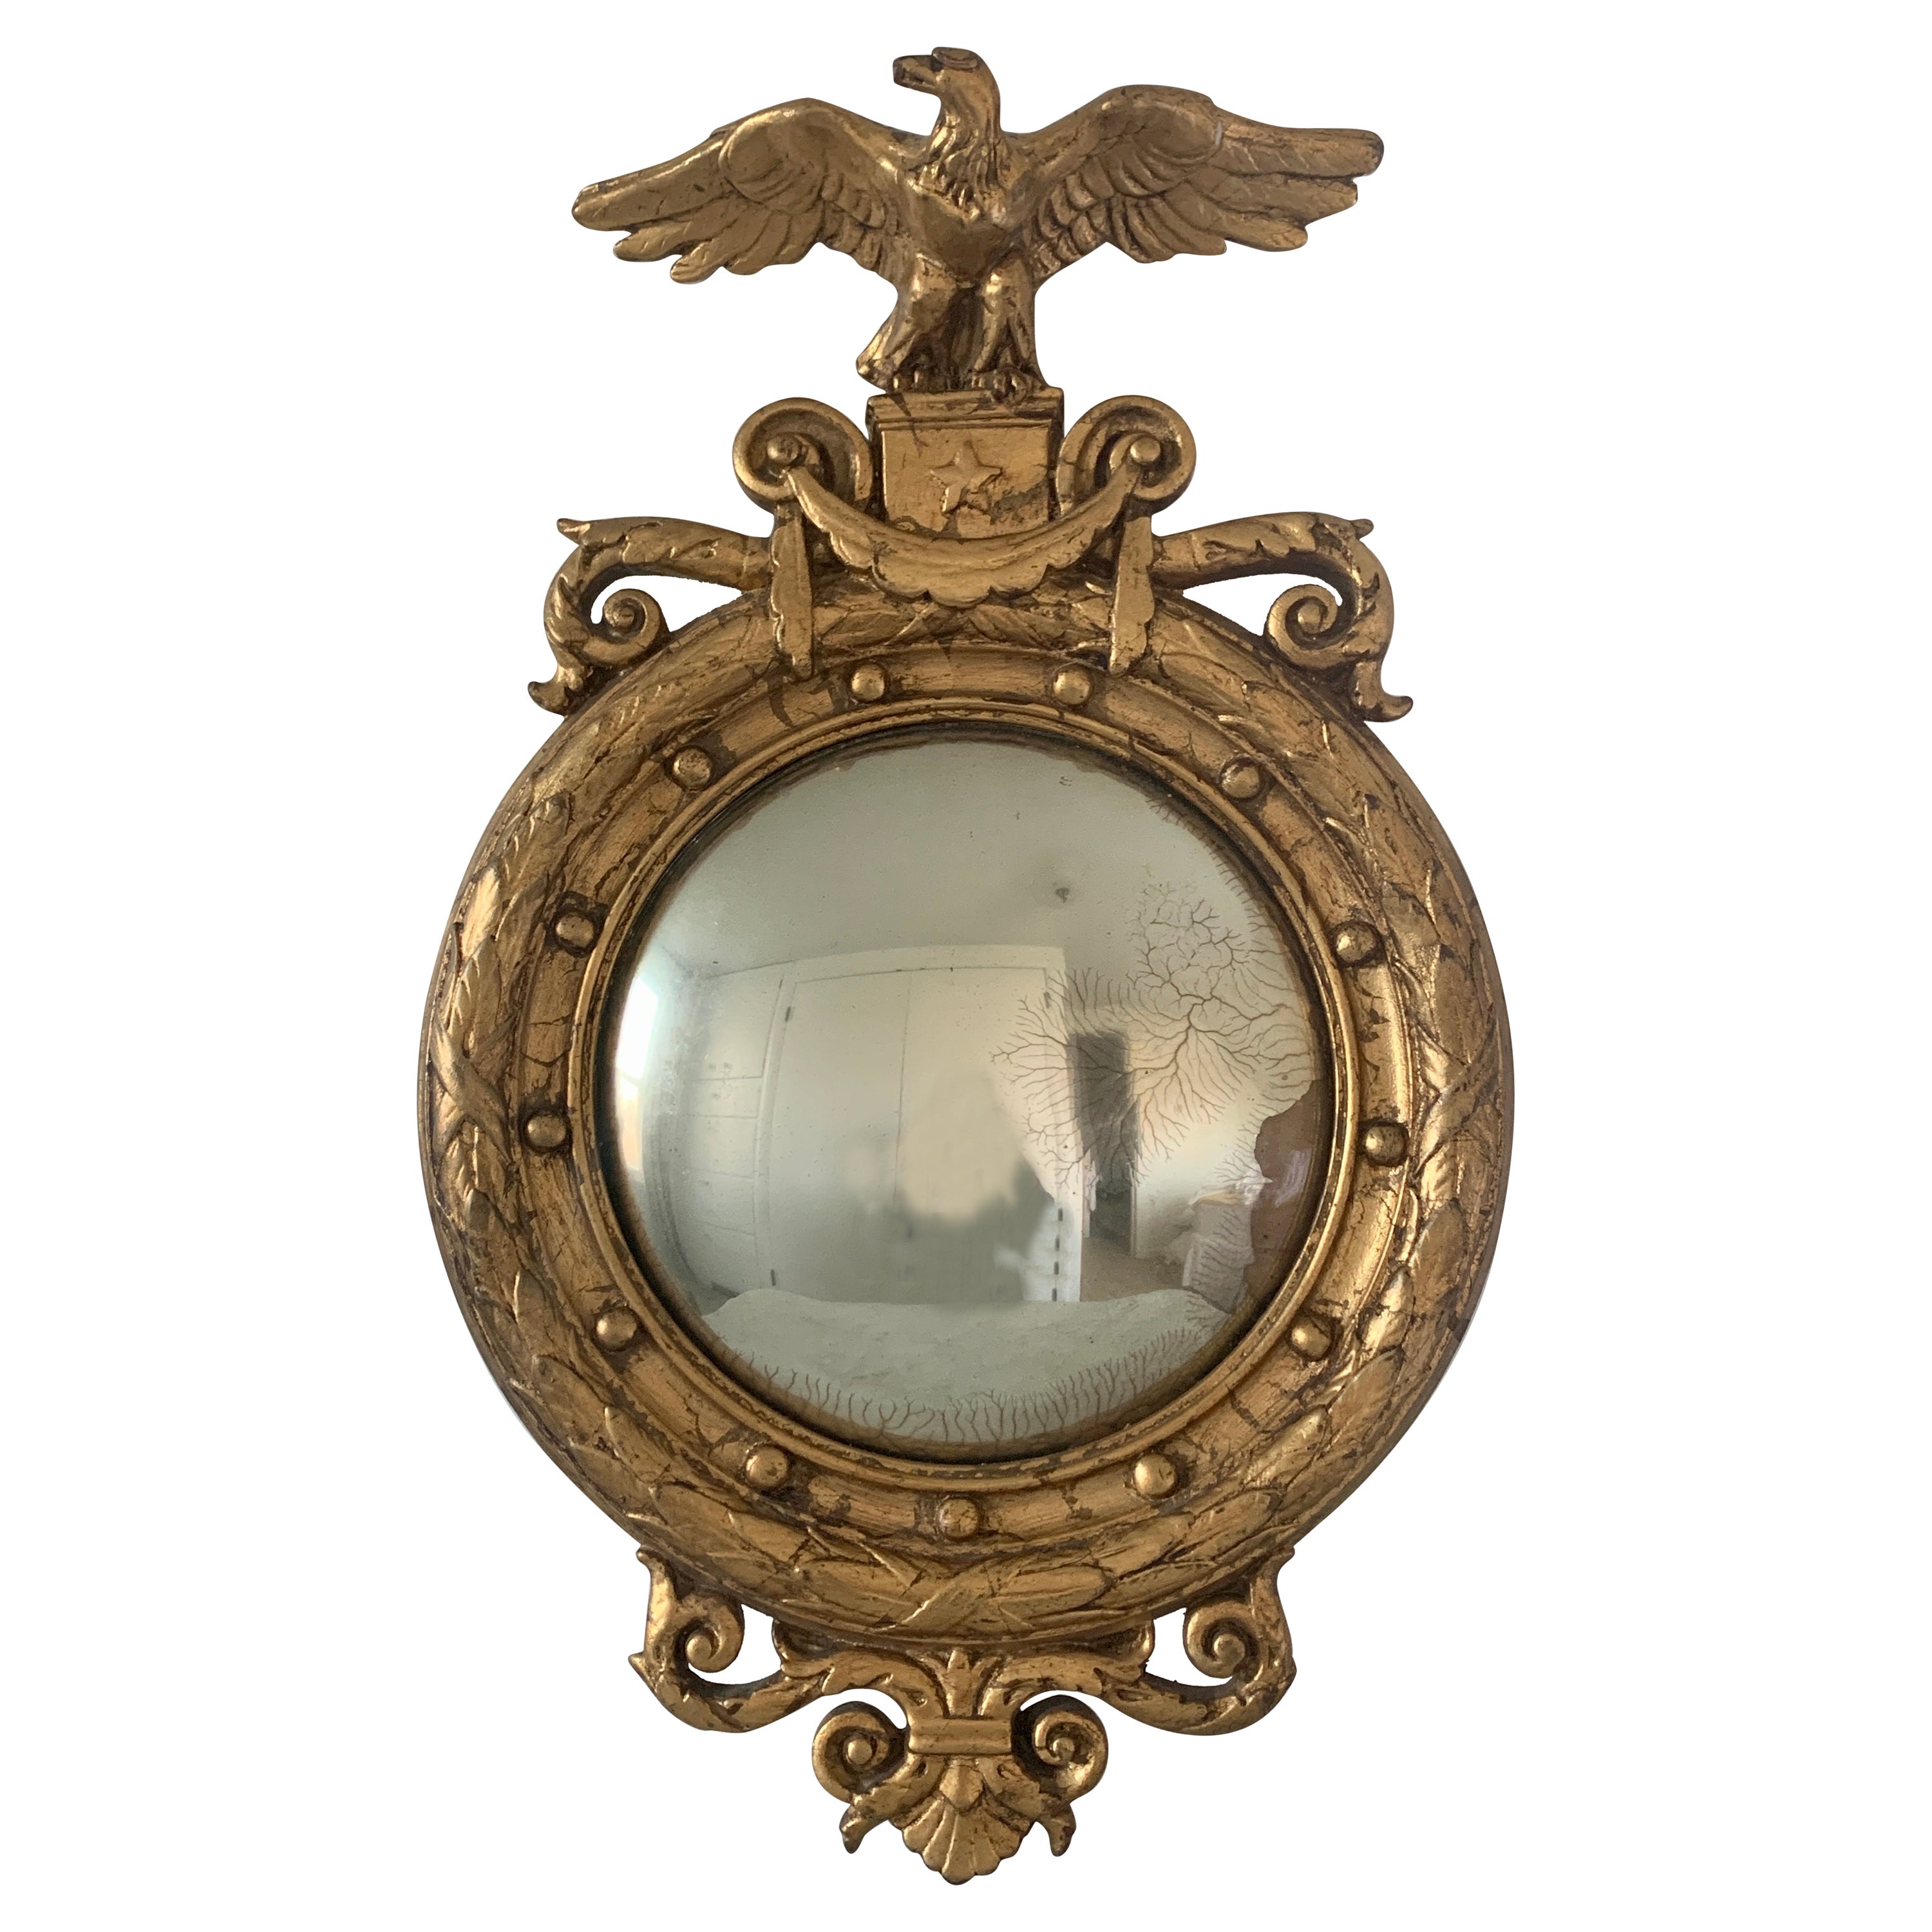 Antique miroir convexe en bois doré du 19ème siècle, de type fédéral américain, avec aigle en œil de bœuf